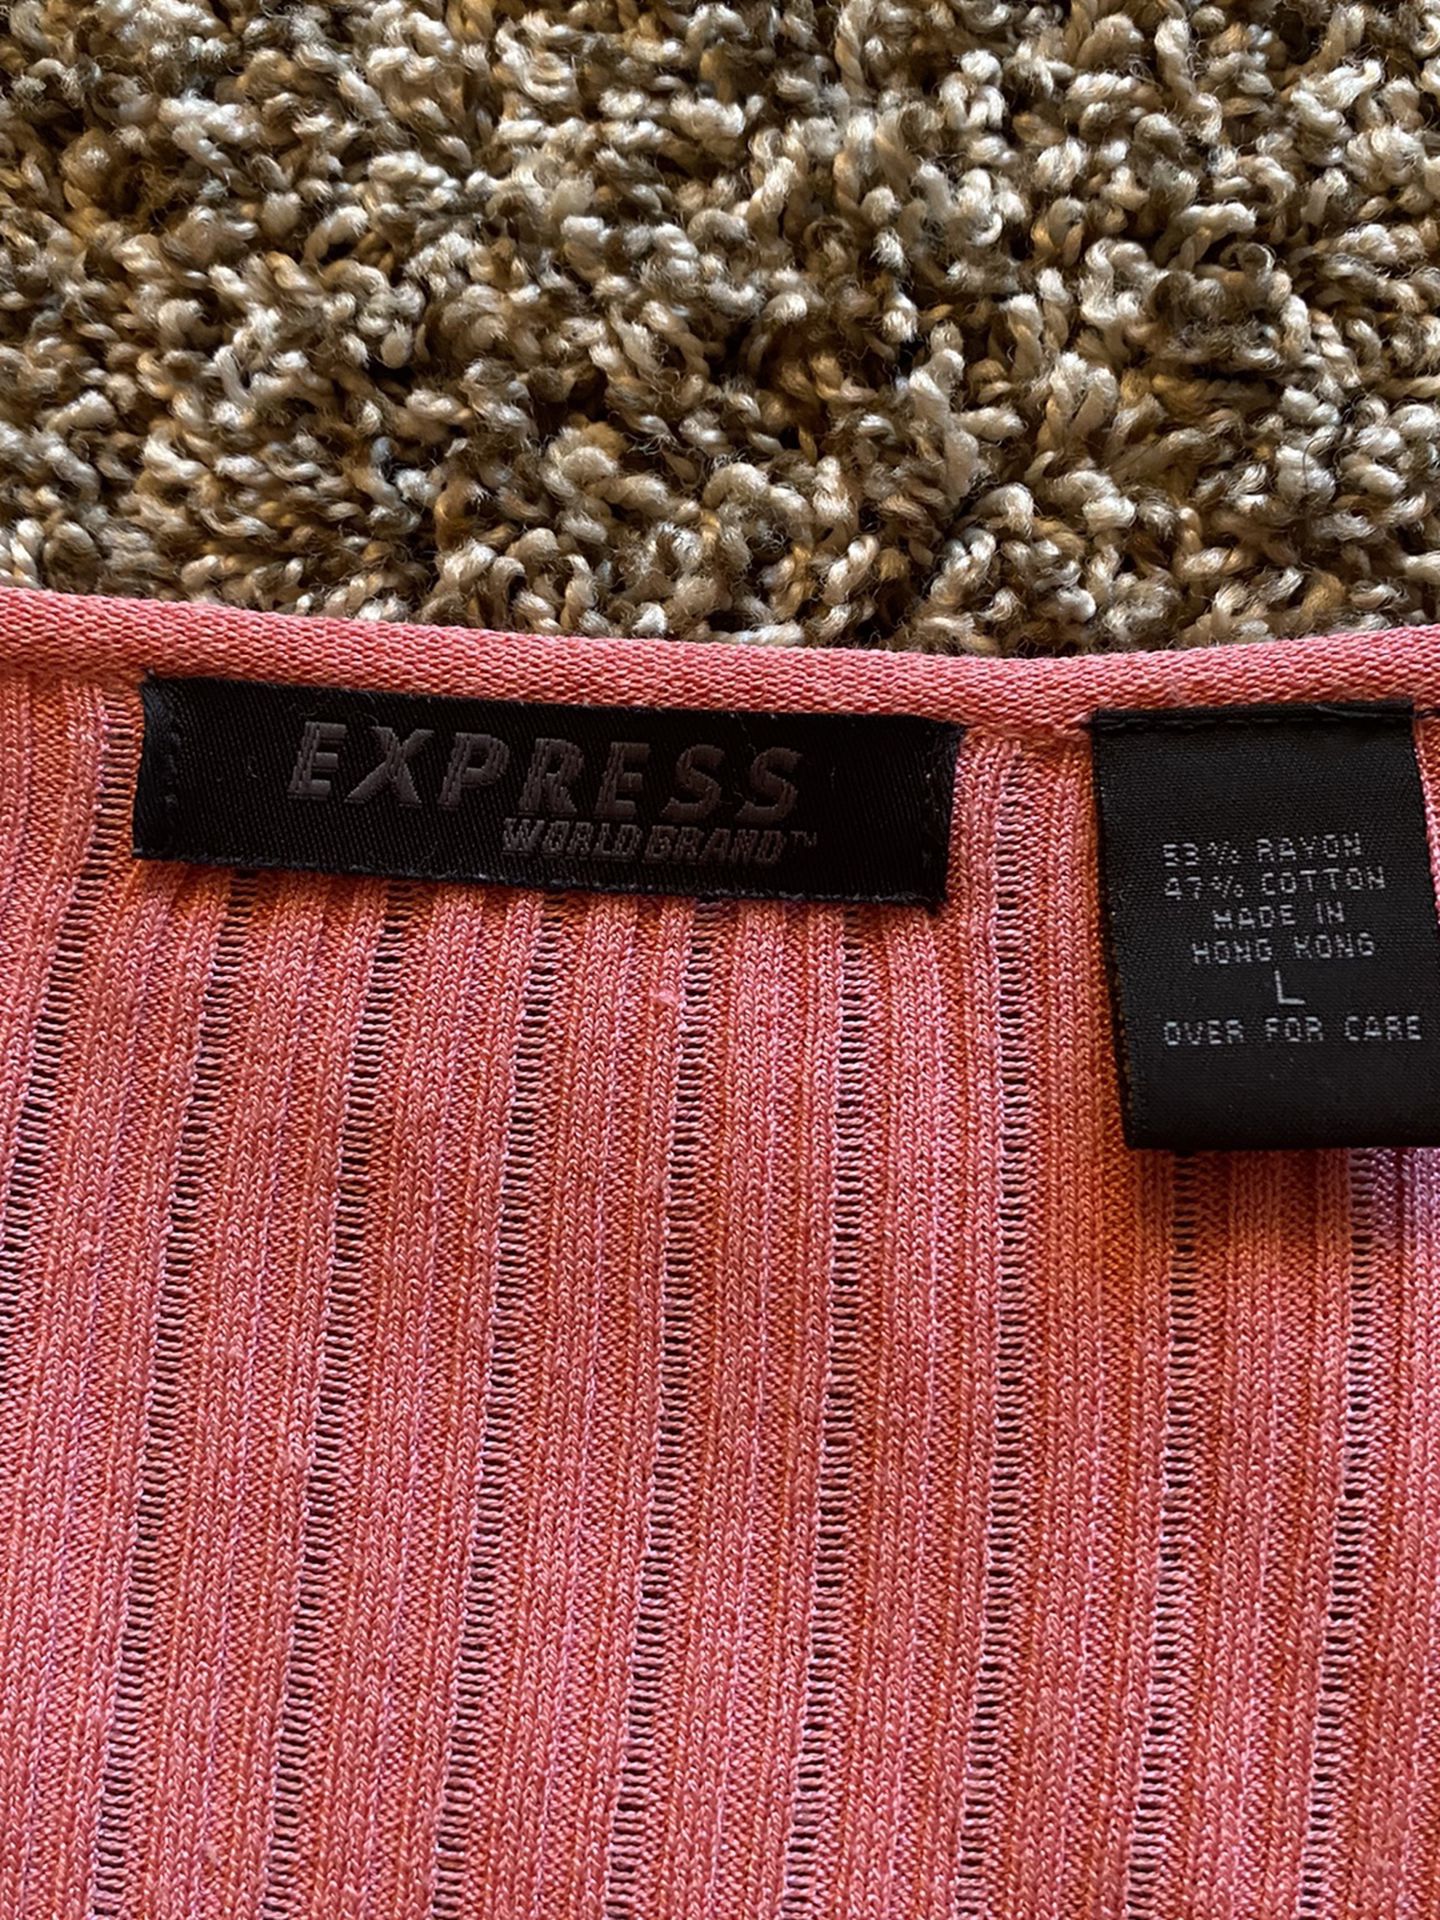 Express Cardigan